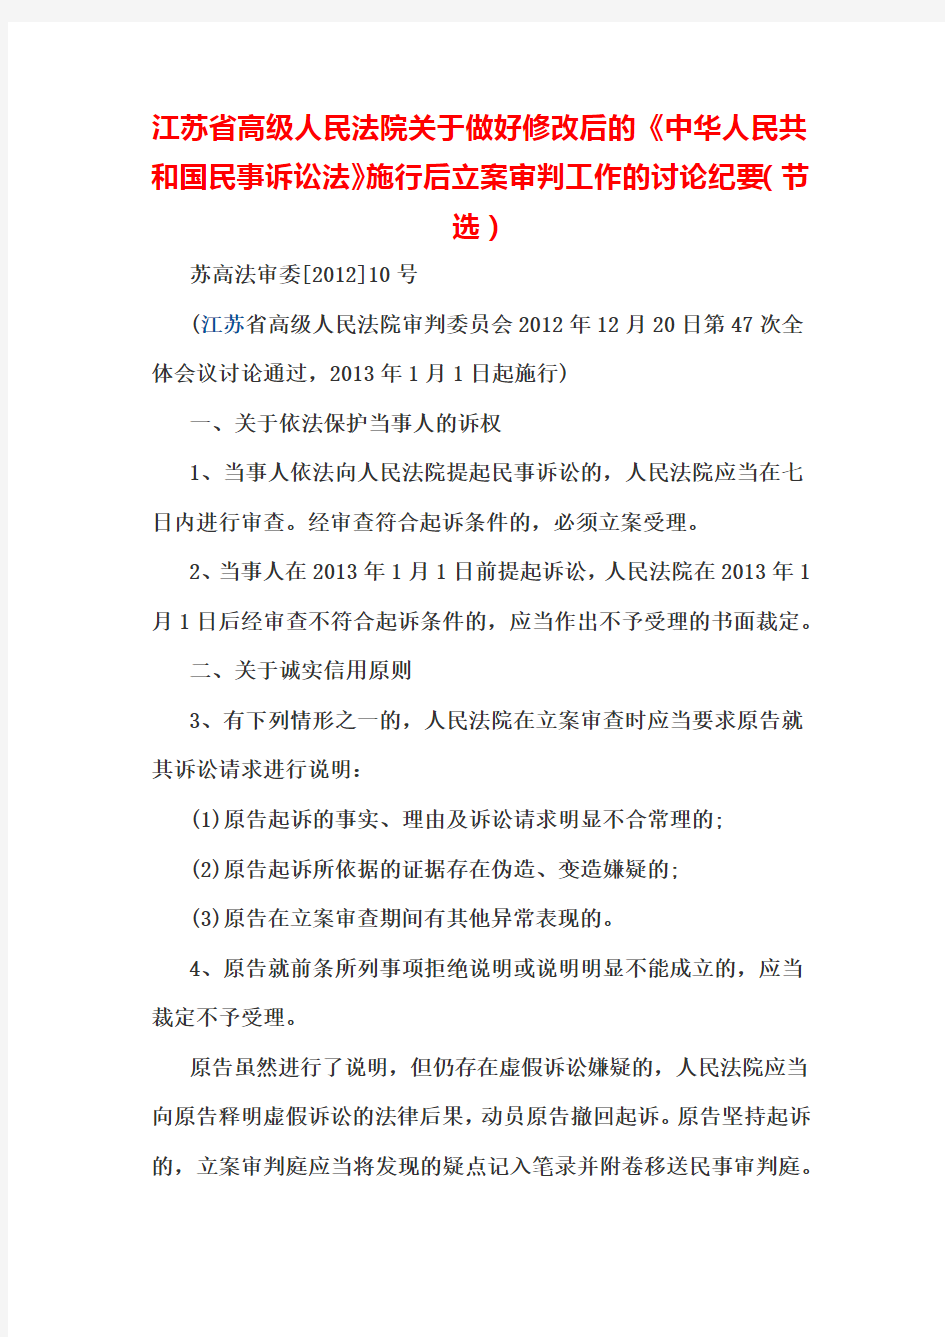 江苏省高级人民法院关于做好民诉法修改后立案